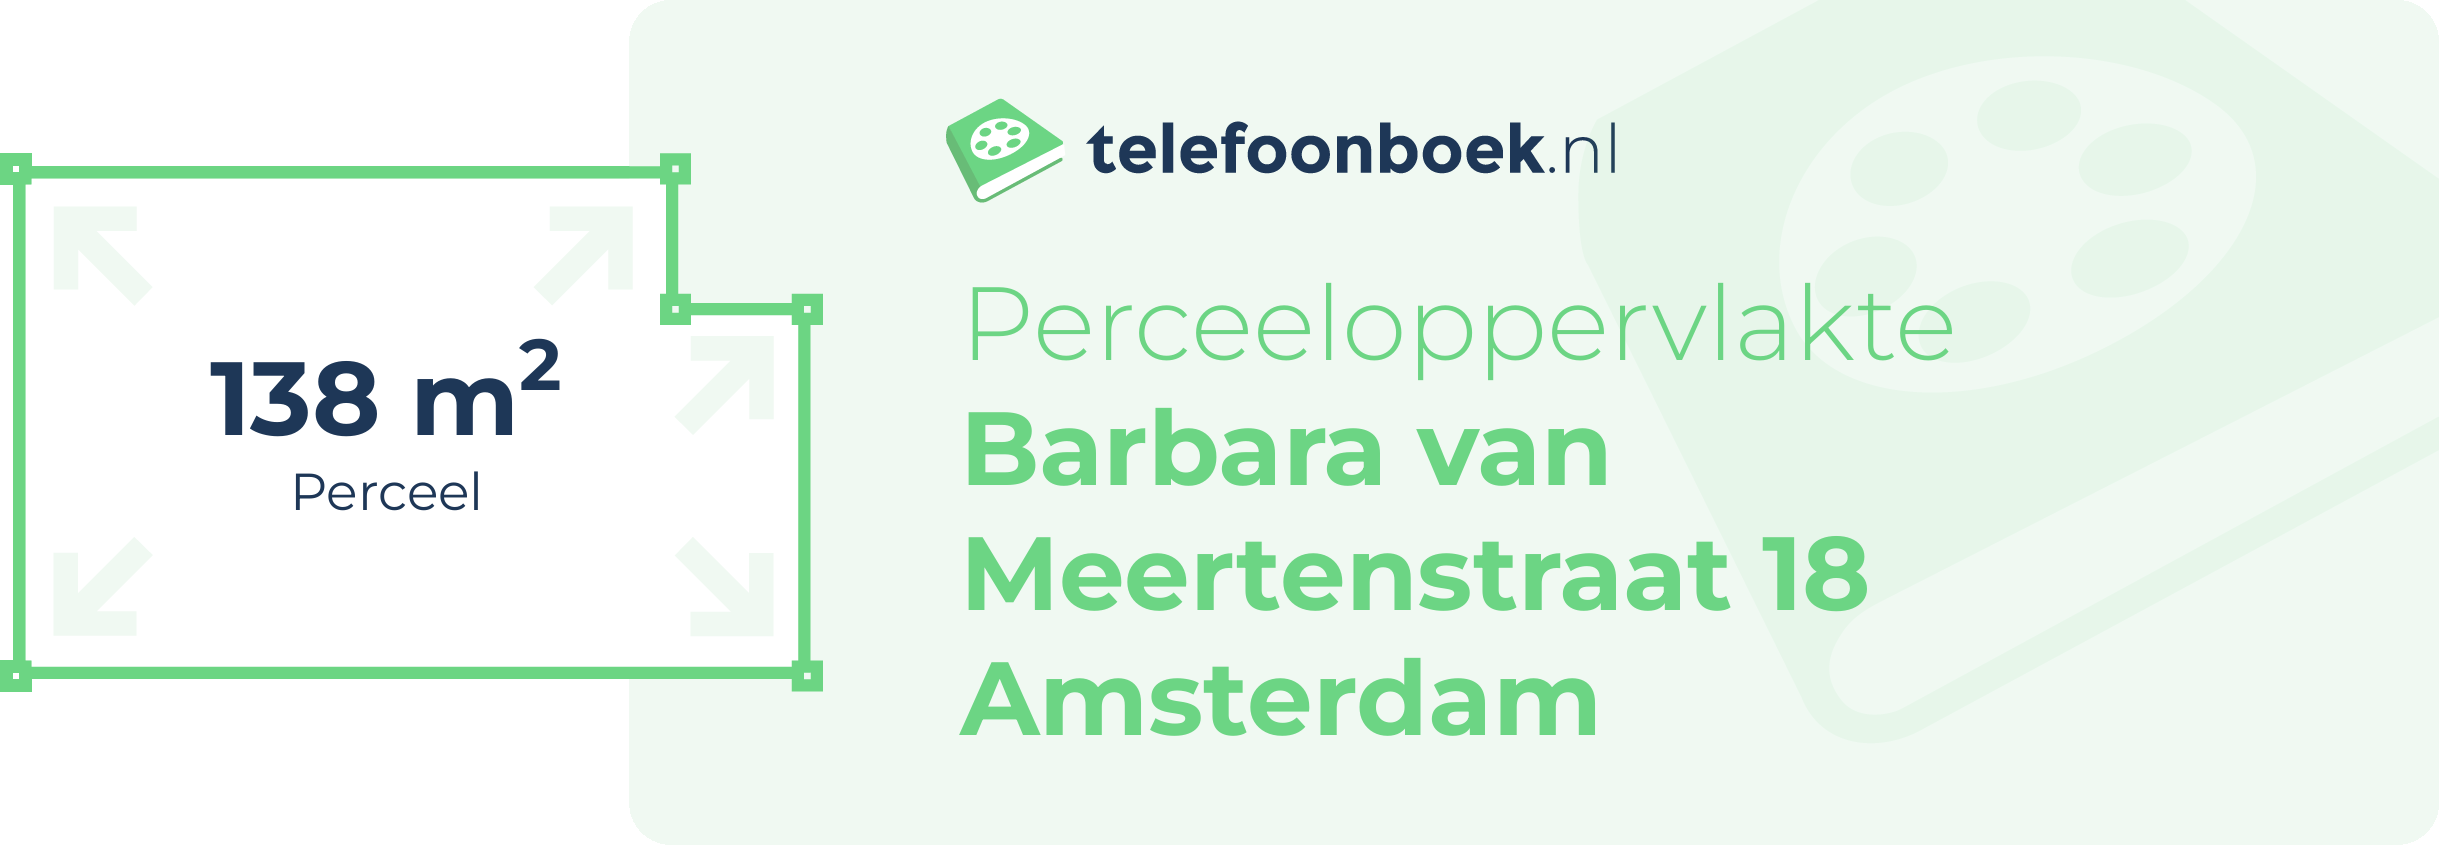 Perceeloppervlakte Barbara Van Meertenstraat 18 Amsterdam